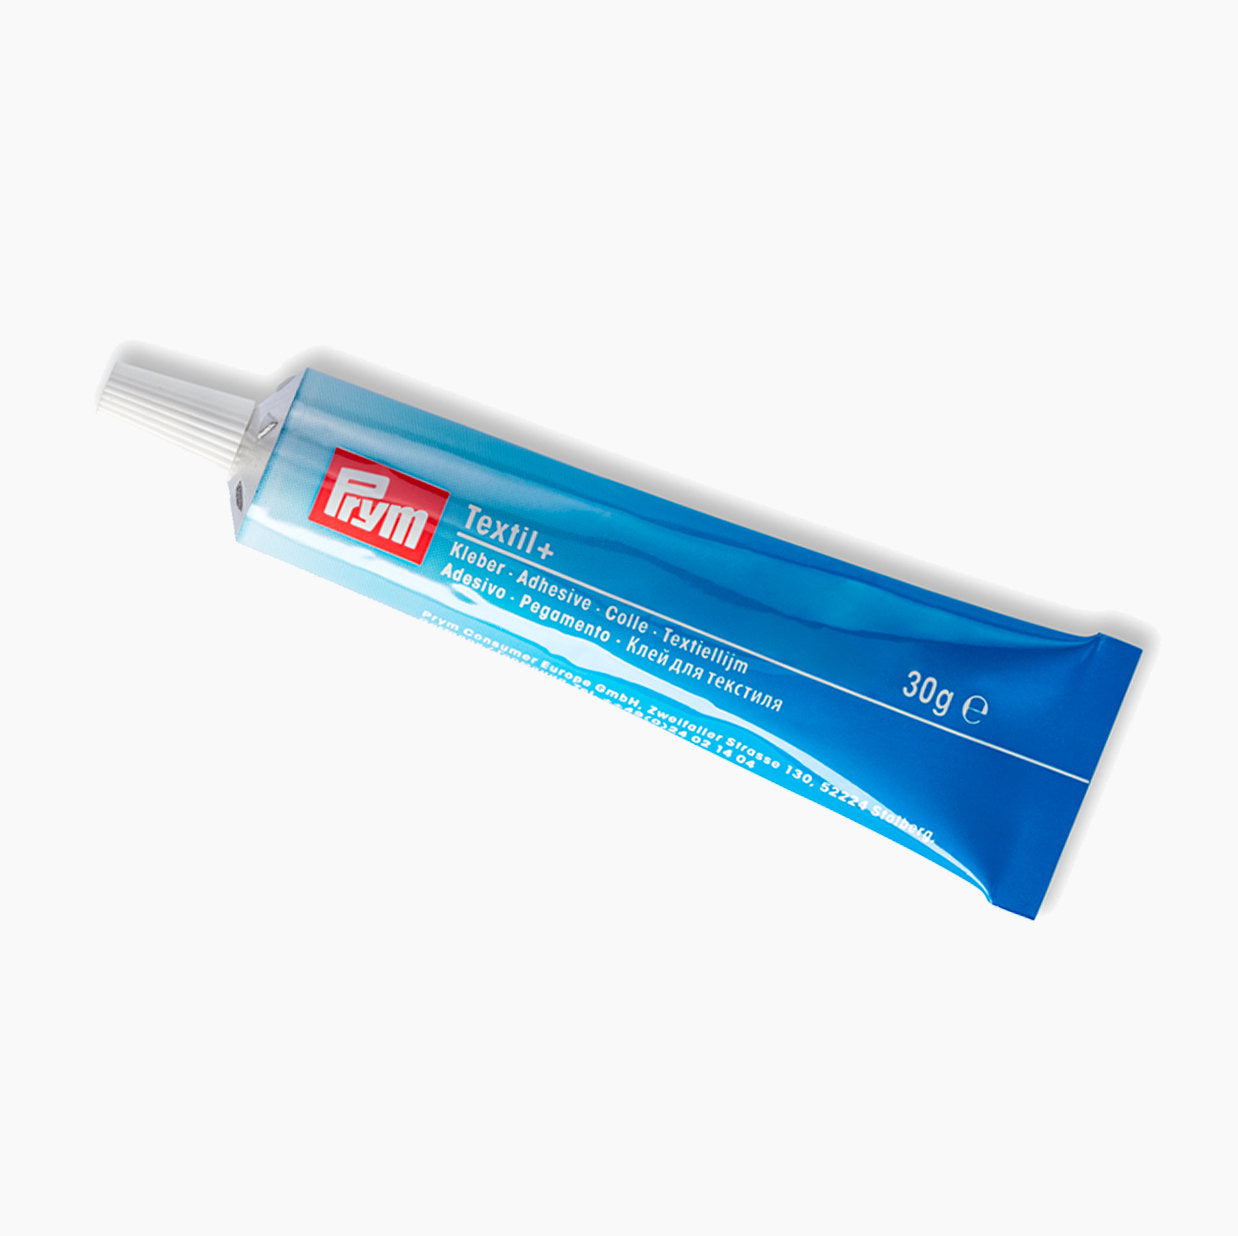 Prym 968008 solvent-free multipurpose textile glue, 30 g